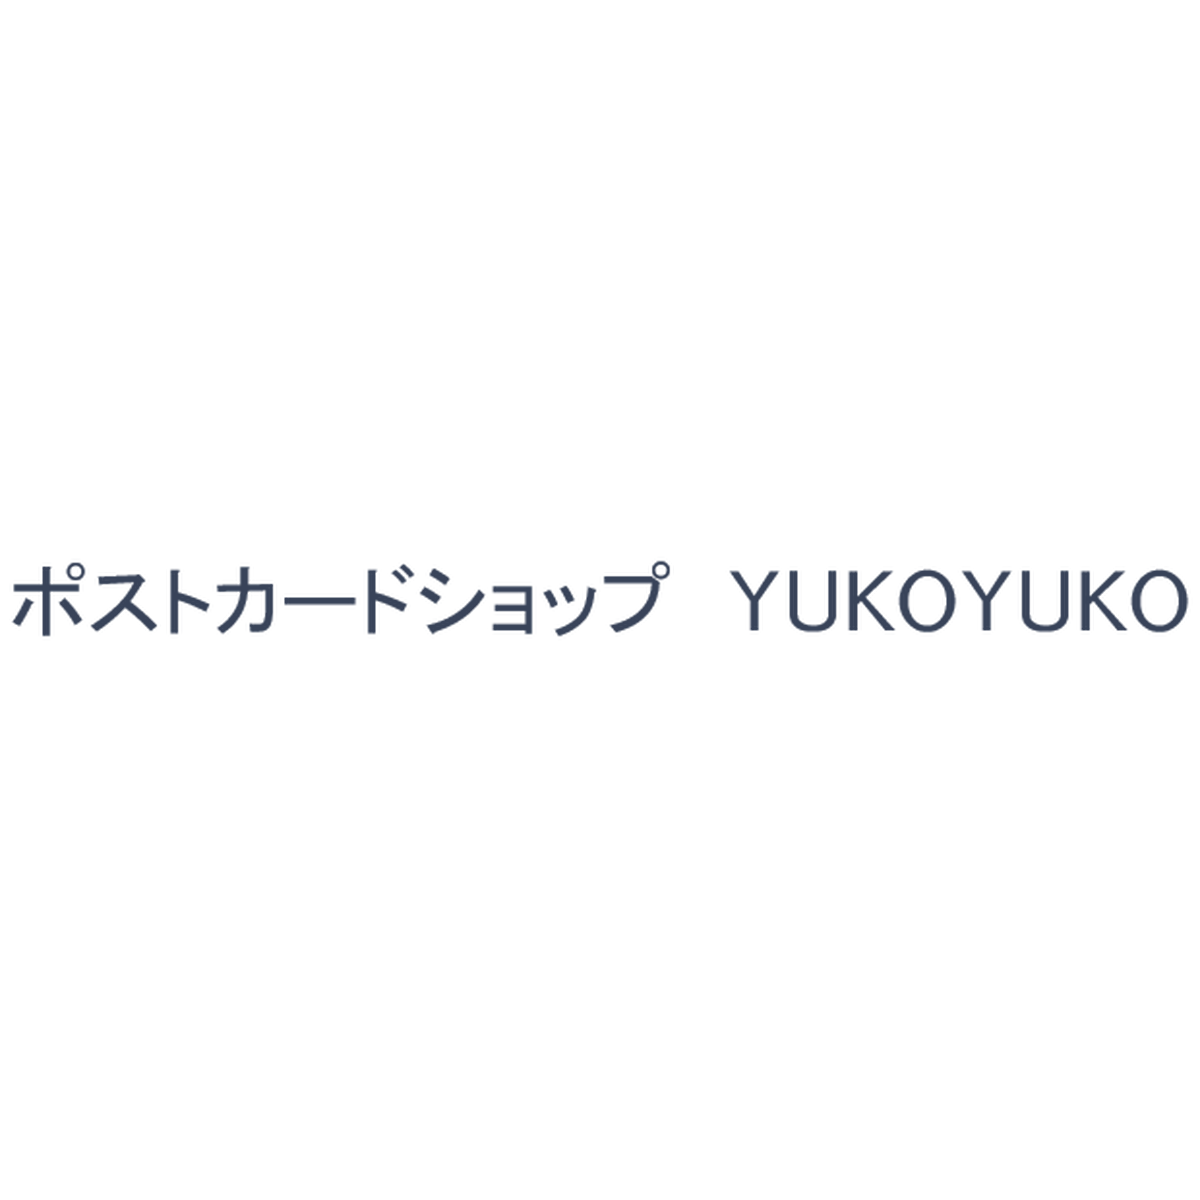 Yukoyuko ポストカードショップ